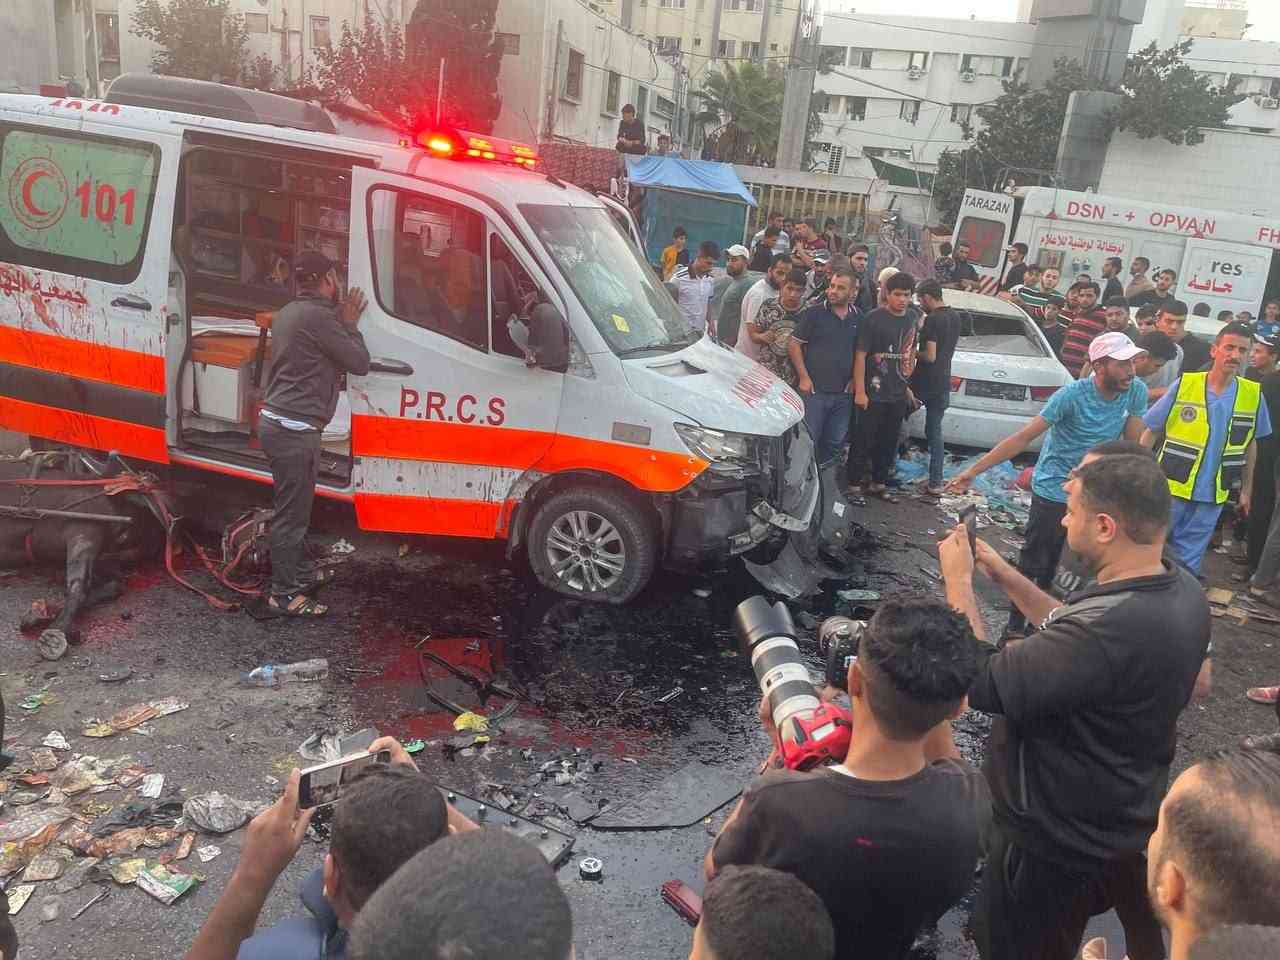 حماس ترد على زعم الإحتلال بوجود مقاتلين في سيارة الإسعاف